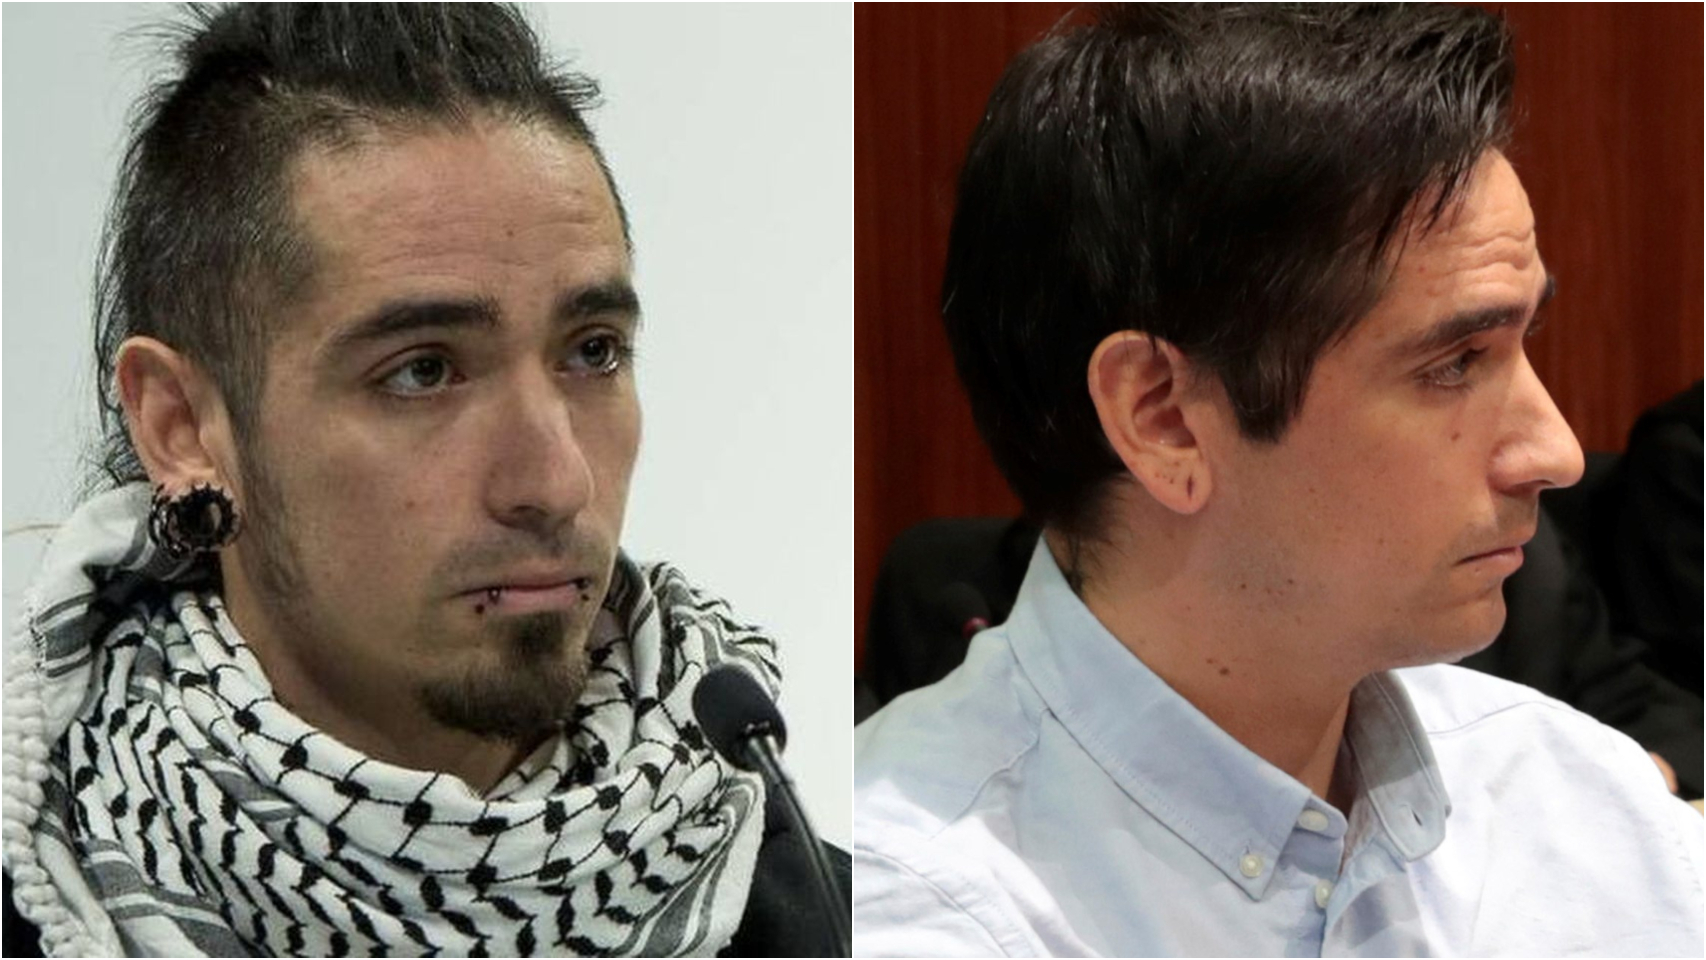 Rodrigo Lanza, a la izquierda, con pinta de antisistema. A la derecha, muestra otra imagen en el juicio.